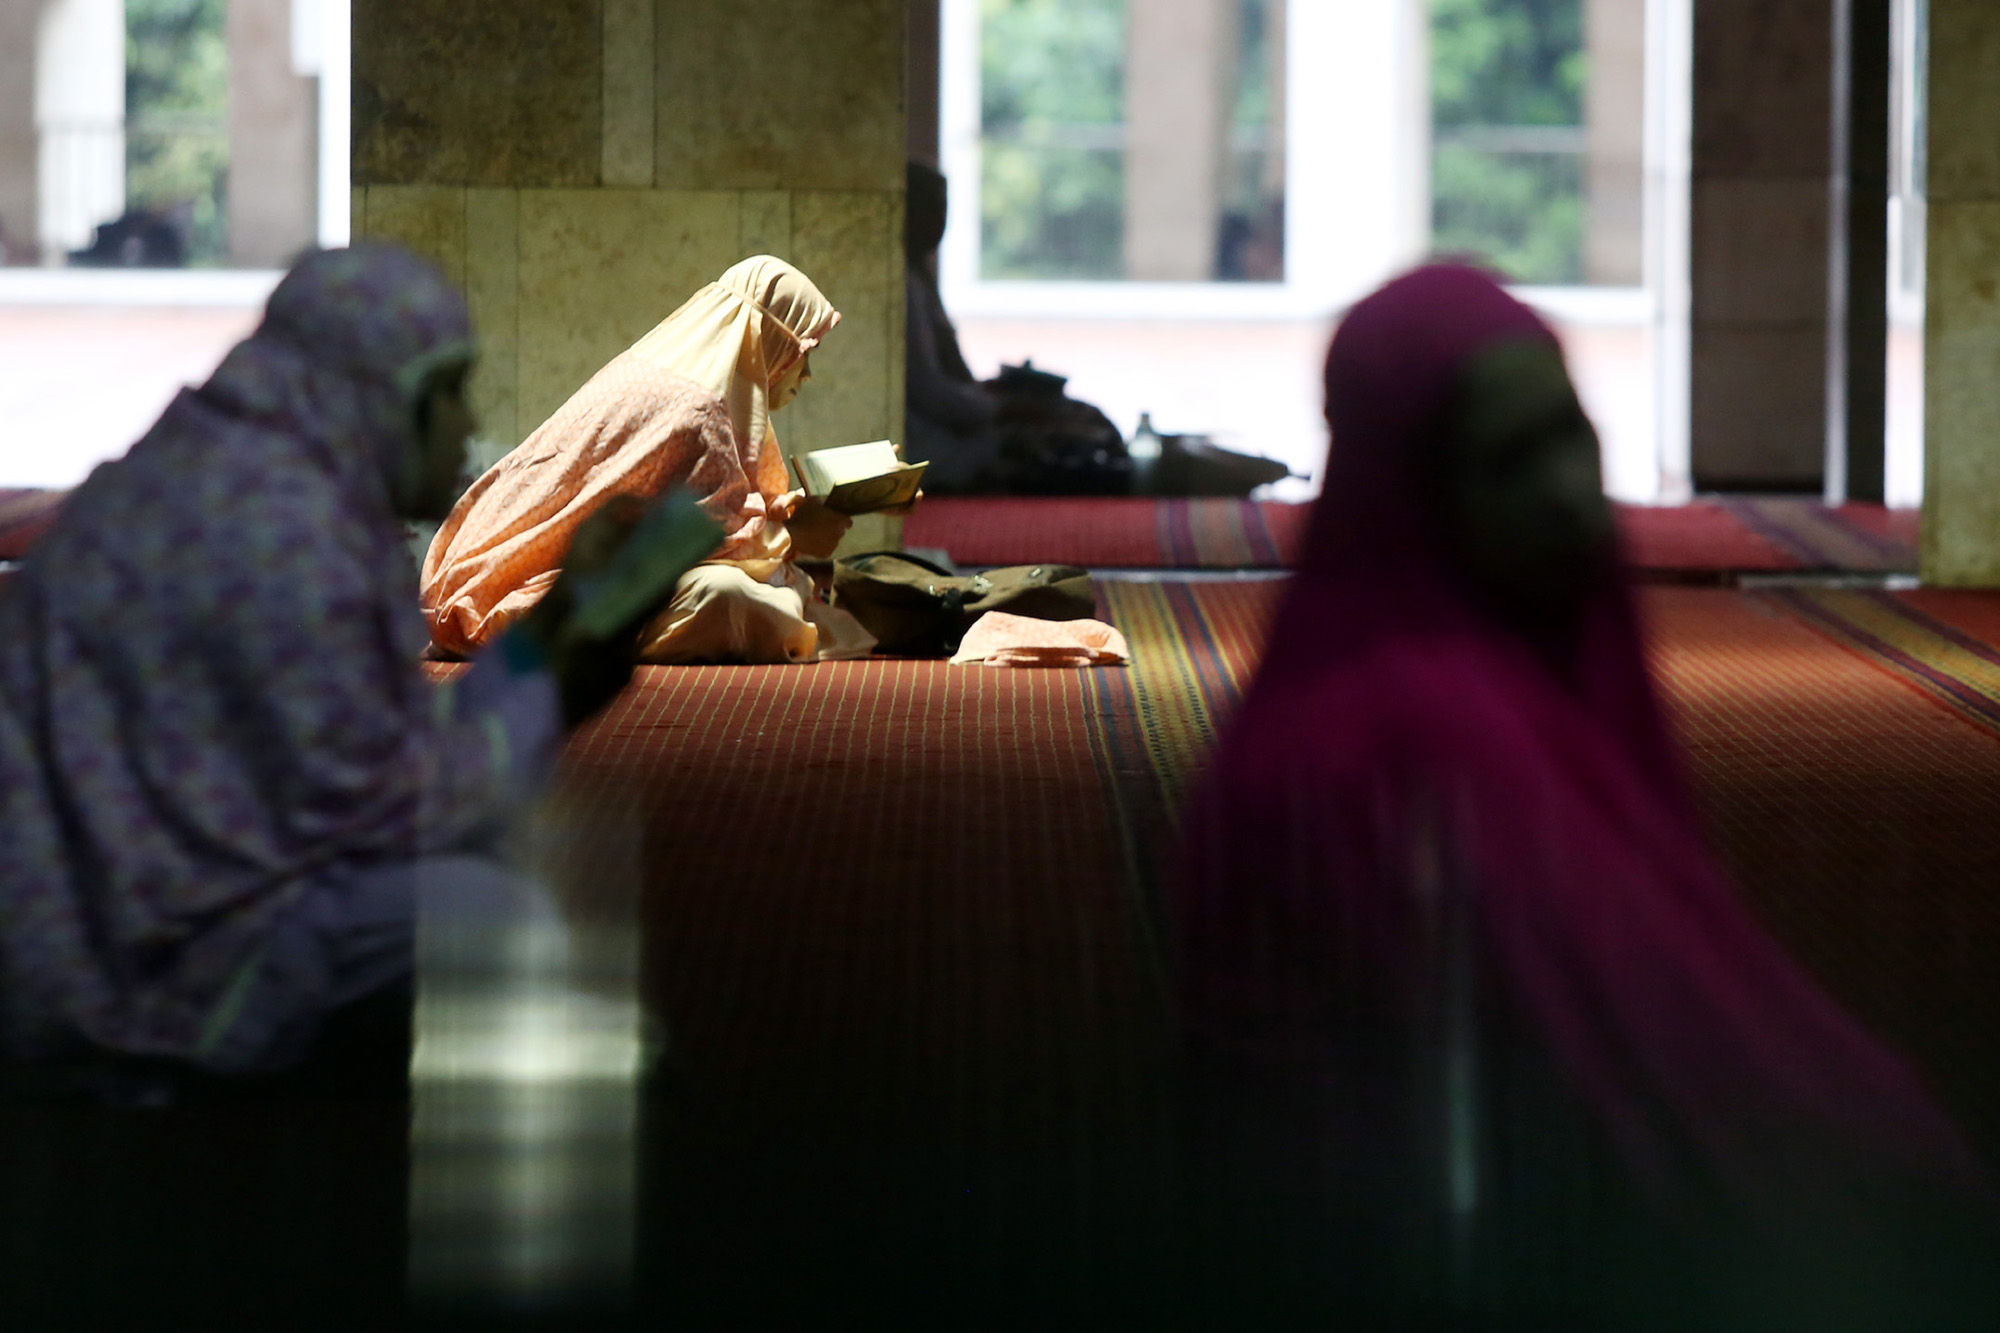 <p>Umat muslim mengisi waktu puasa dengan mengaji dan bertadarus di Masjid Istiqlal, Jakarta. Foto: Ismail Pohan/TrenAsia</p>
